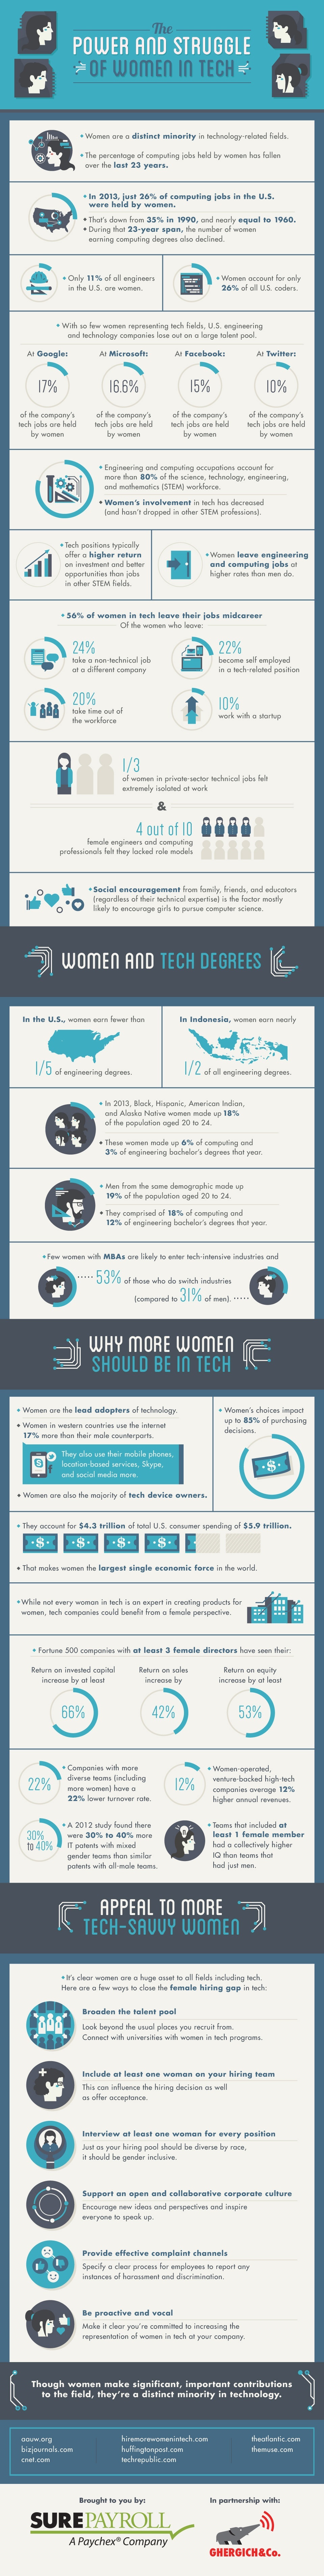 women-in-tech-2015